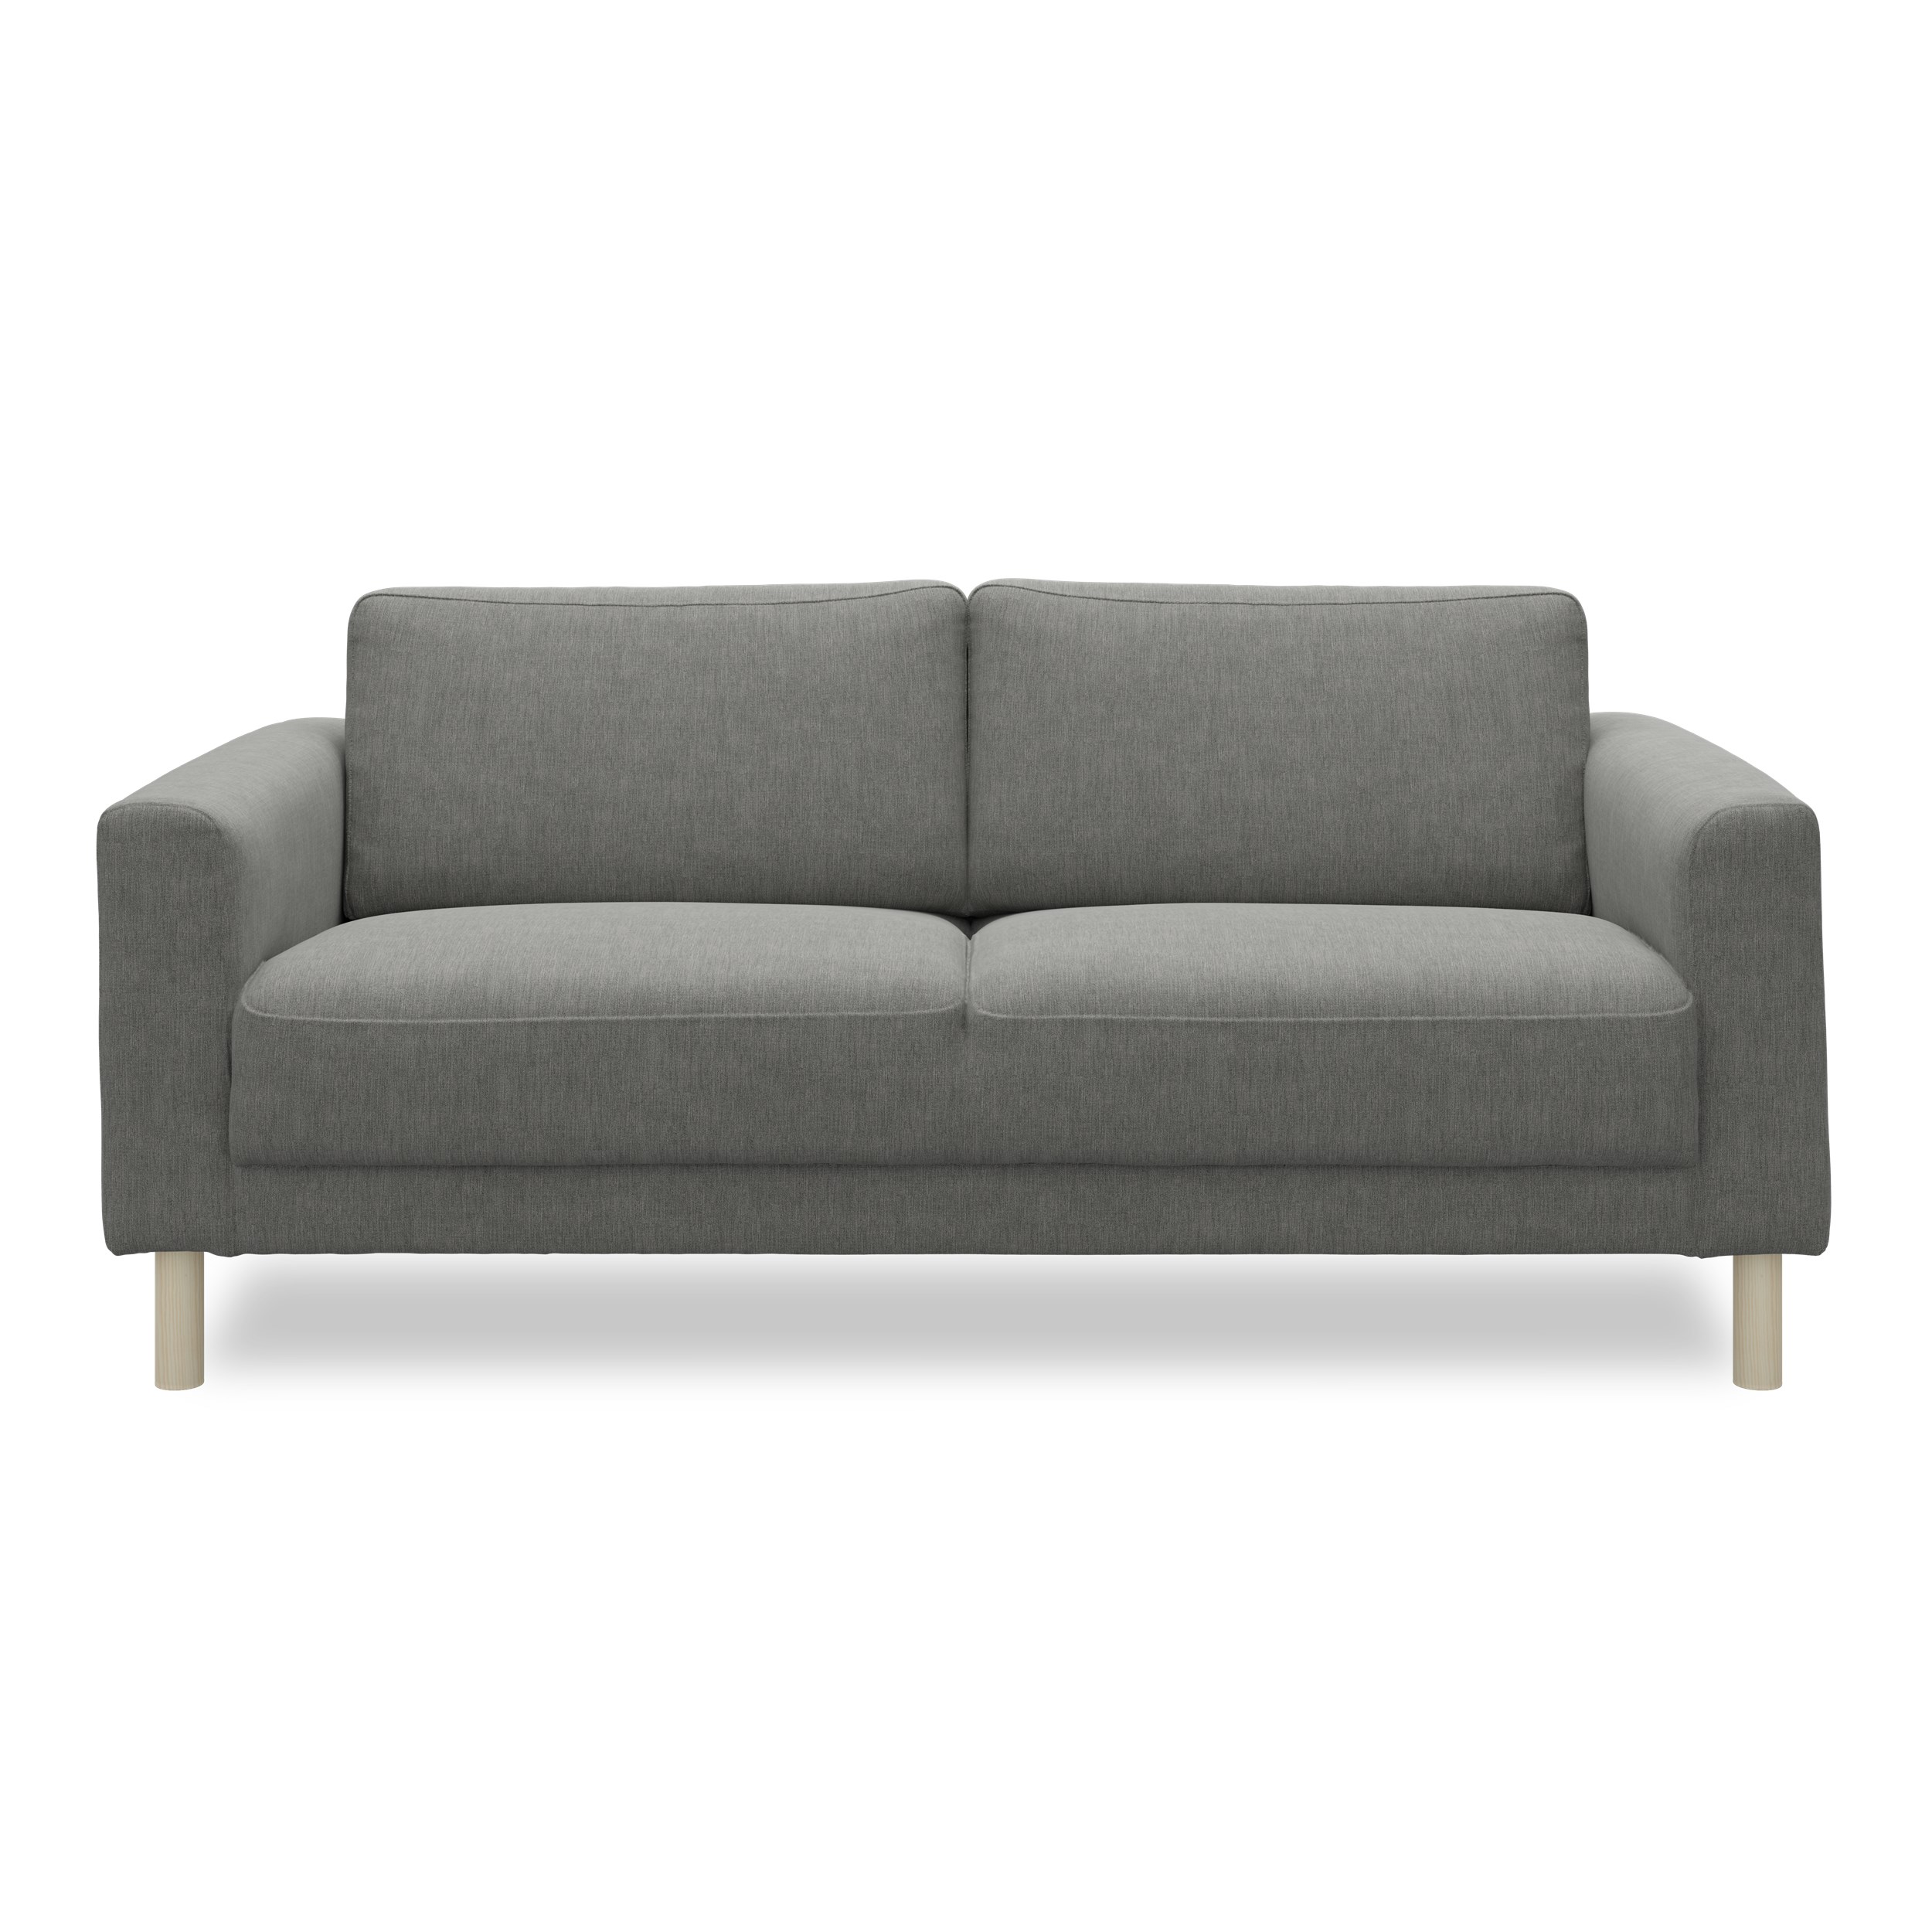 Cleveland 2 pers. Sofa - Soft 450 Grey stof, Ben i hvidolieret fyrretræ og sæde i polyetherskum, ryg i polyetherskum